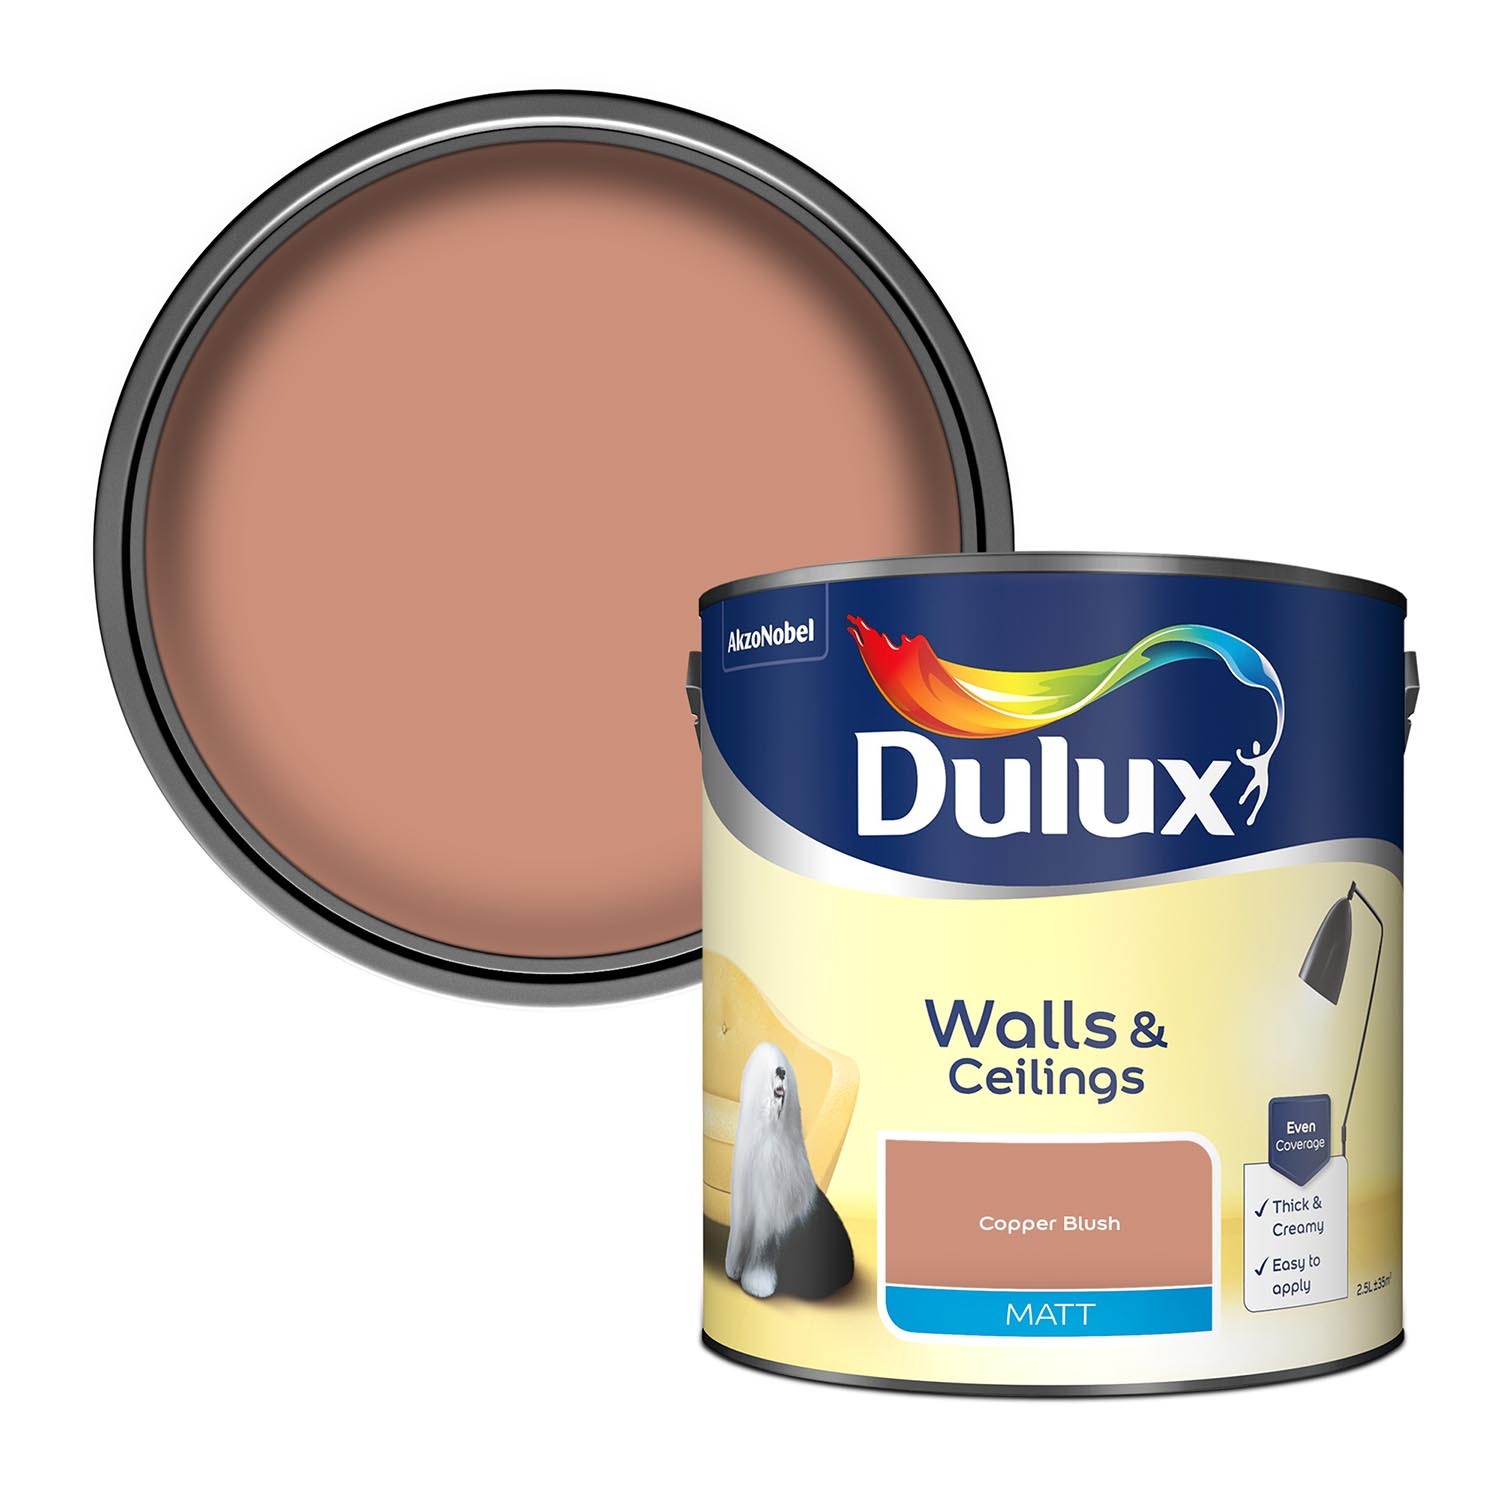 Dulux Walls & Ceilings Copper Blush Matt Emulsion Paint 2.5L Image 1